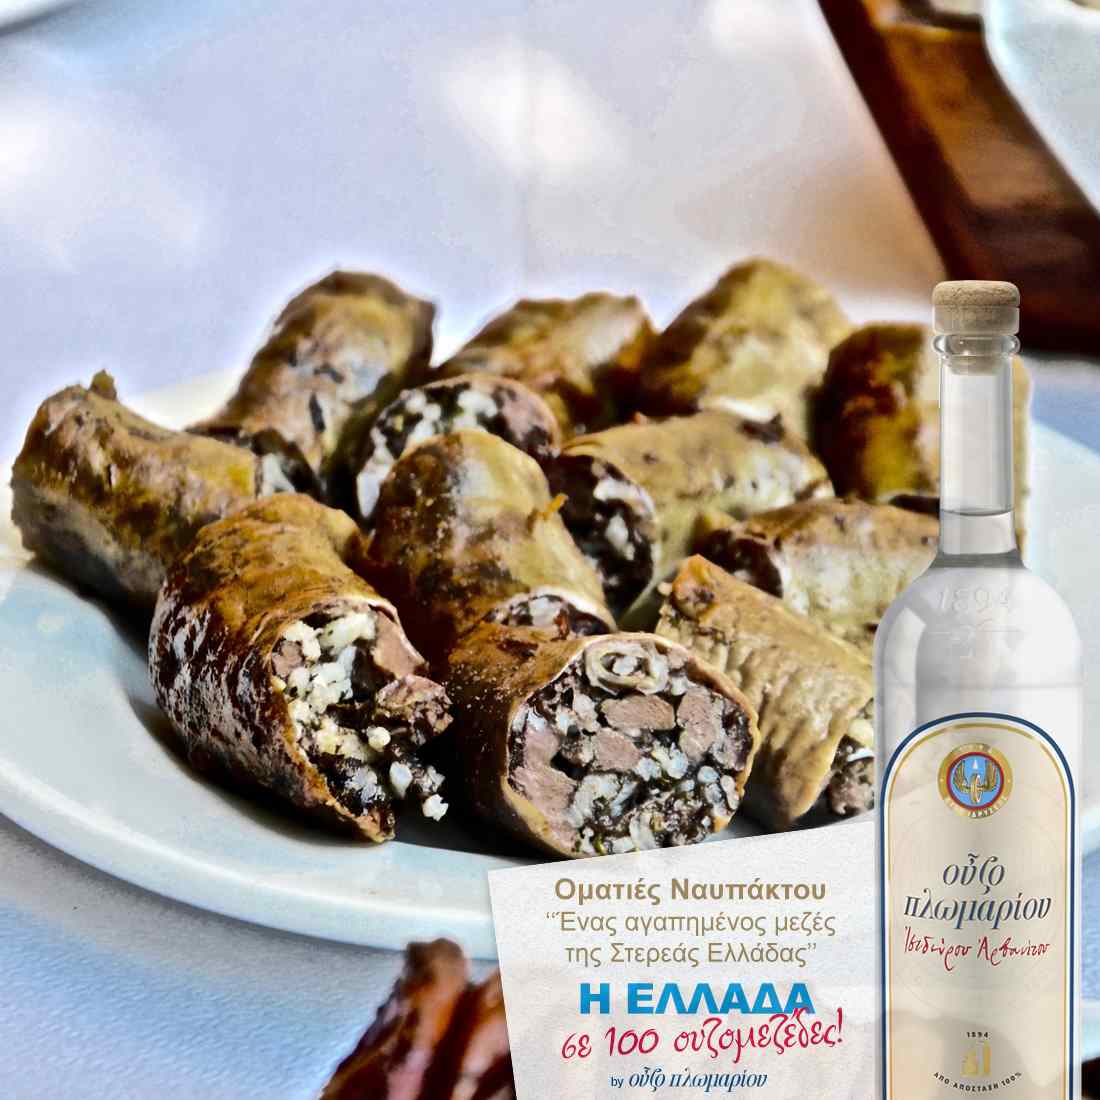 Οματιές Ναυπάκτου - Ουζομεζέδες - Greek Gastronomy Guide